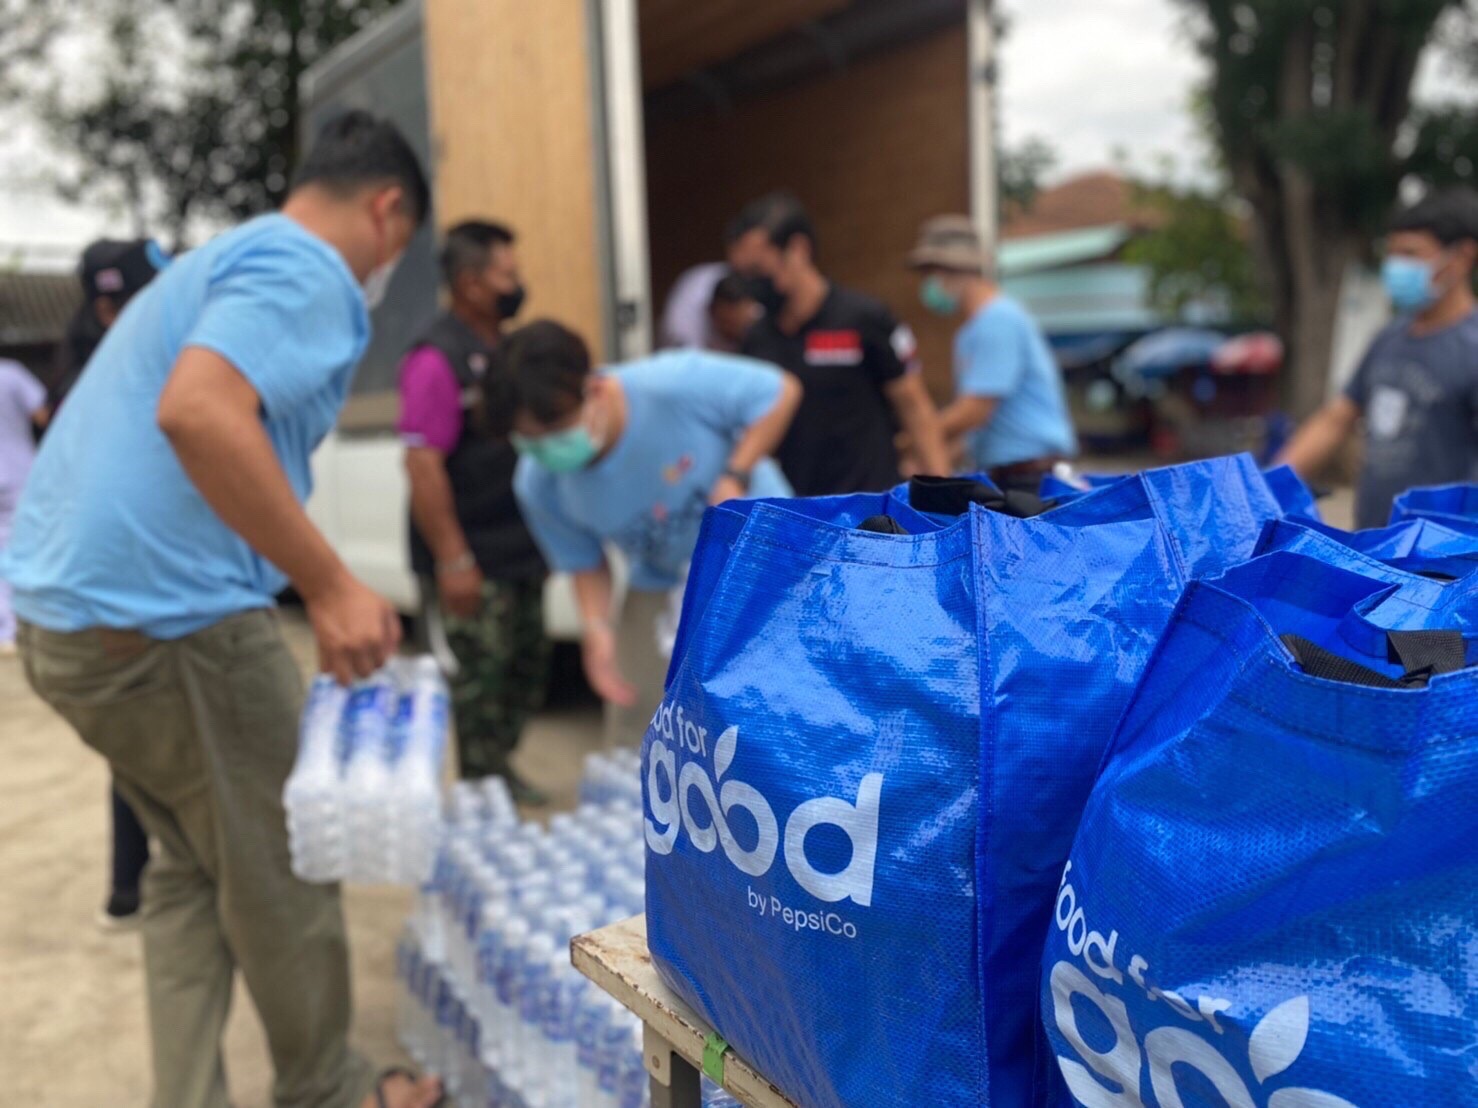 Food For Good อาหารล้านมื้อเพื่อกำลังใจให้คนไทยสู้ภัยโควิด-19 โดย PepsiCo ณ เชียงใหม่